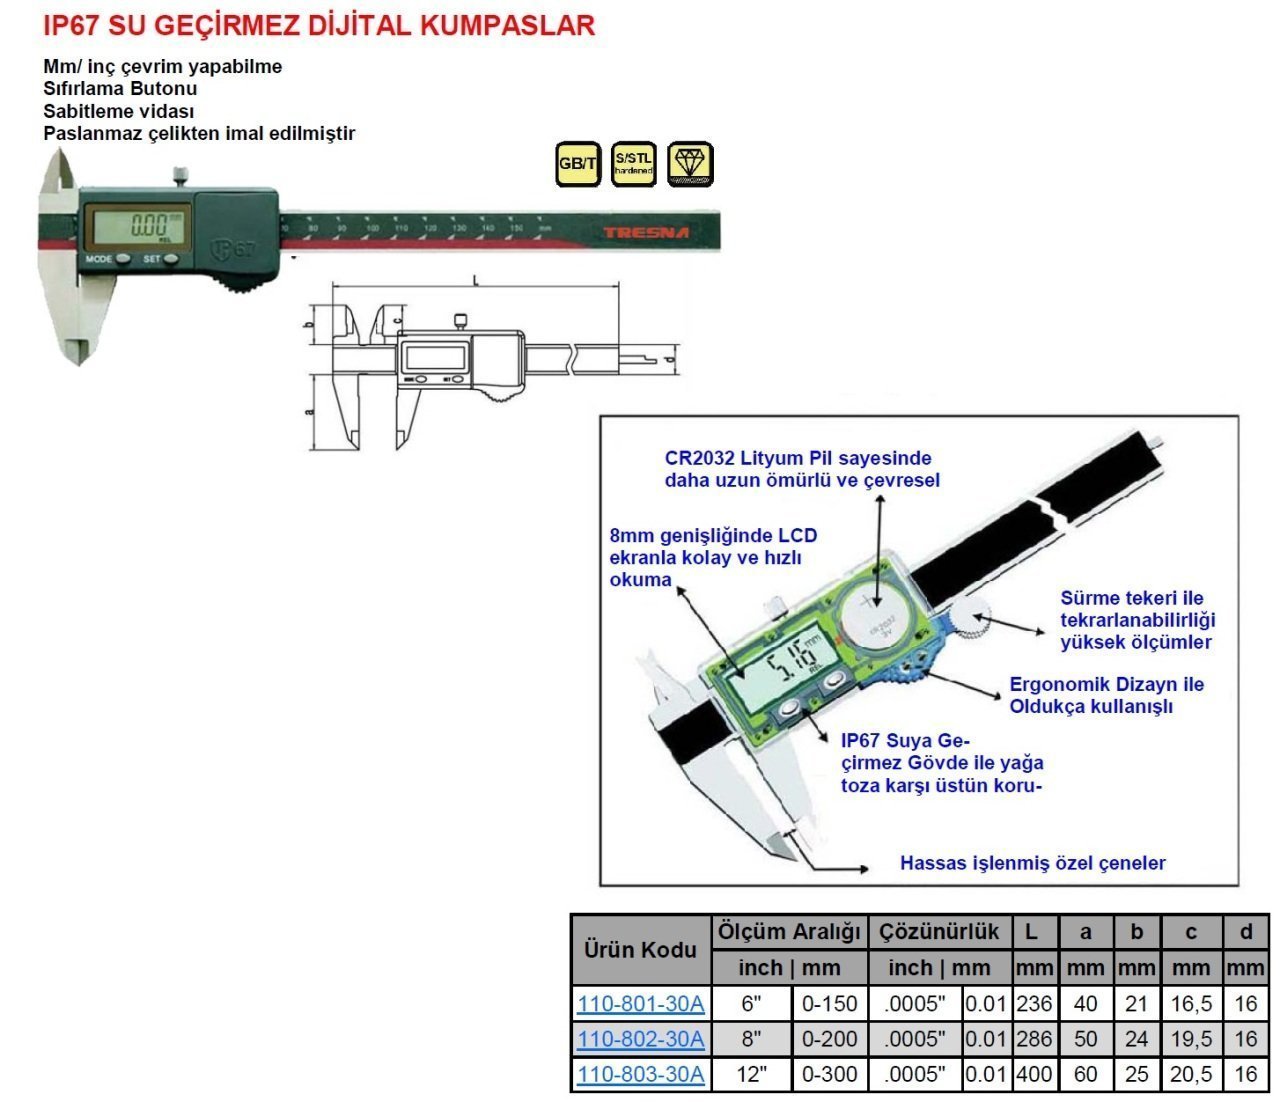 IP67 Su Geçirmez Dijital Kumpas 200mm